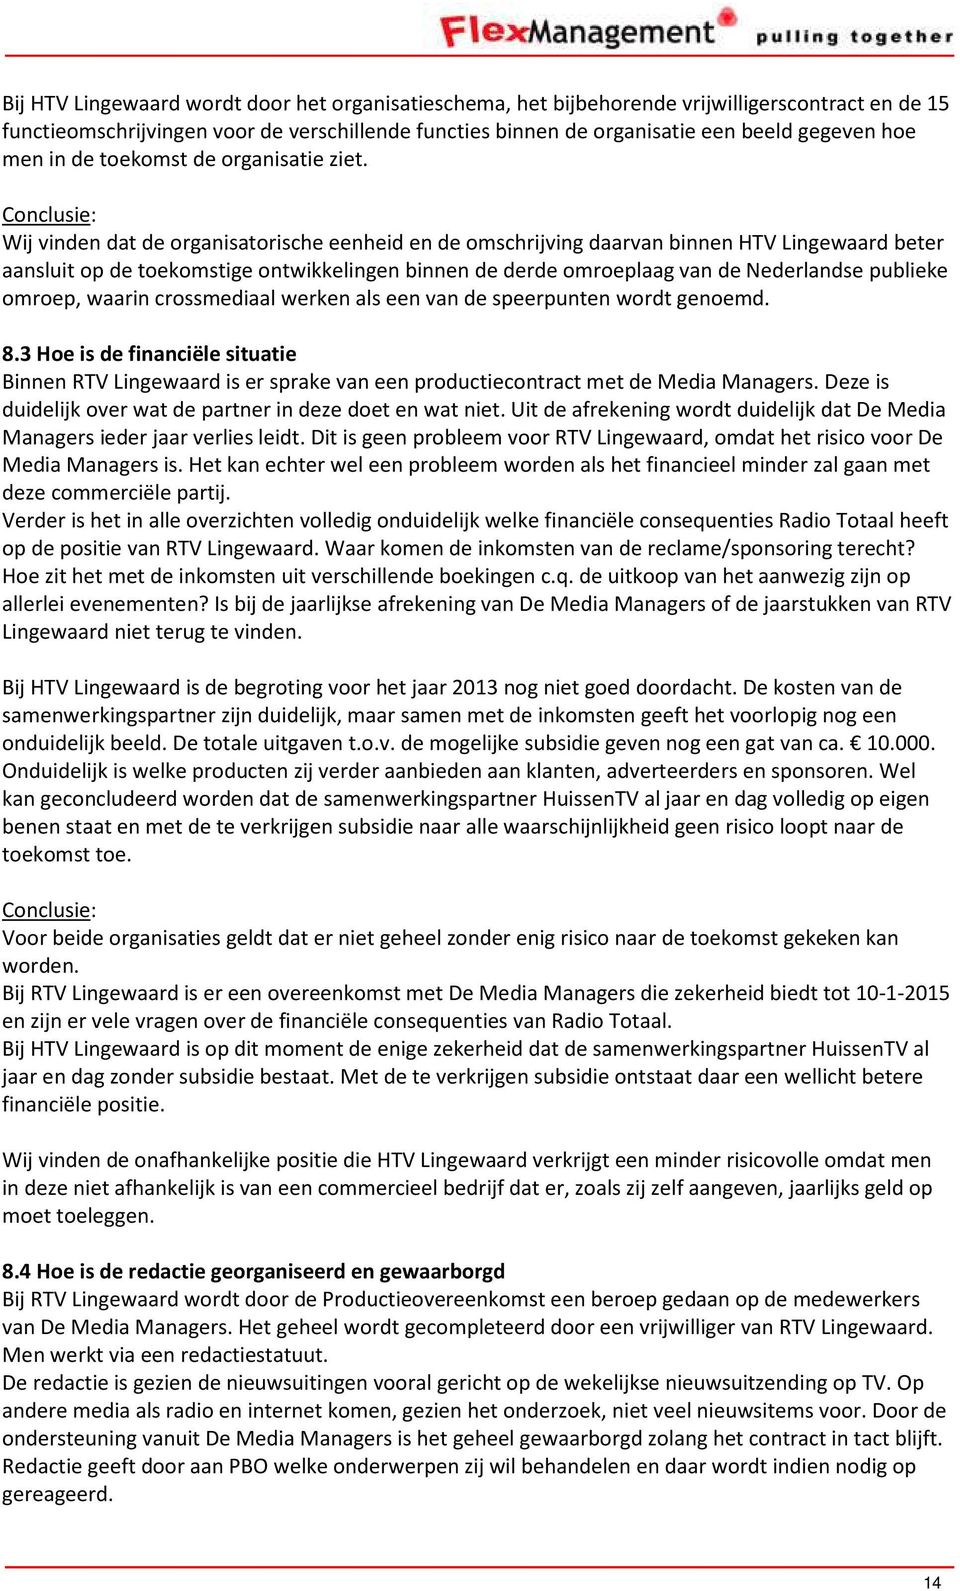 Conclusie: Wij vinden dat de organisatorische eenheid en de omschrijving daarvan binnen HTV Lingewaard beter aansluit op de toekomstige ontwikkelingen binnen de derde omroeplaag van de Nederlandse